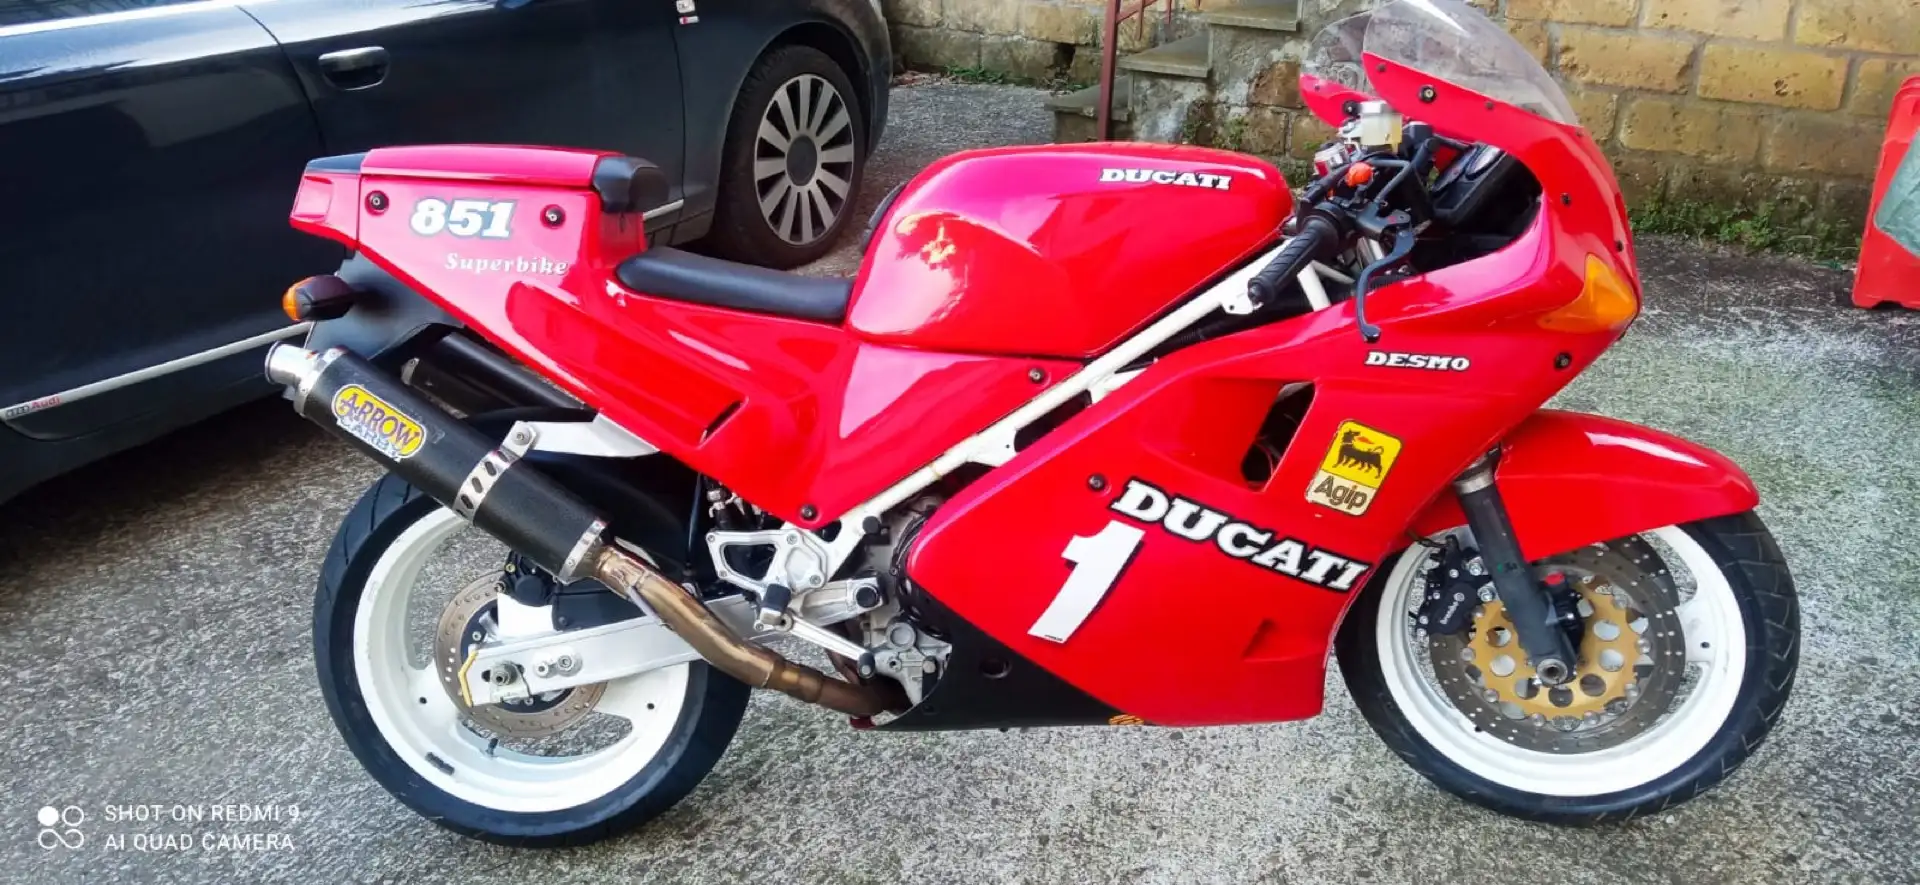 Ducati 851 superbike Red - 2